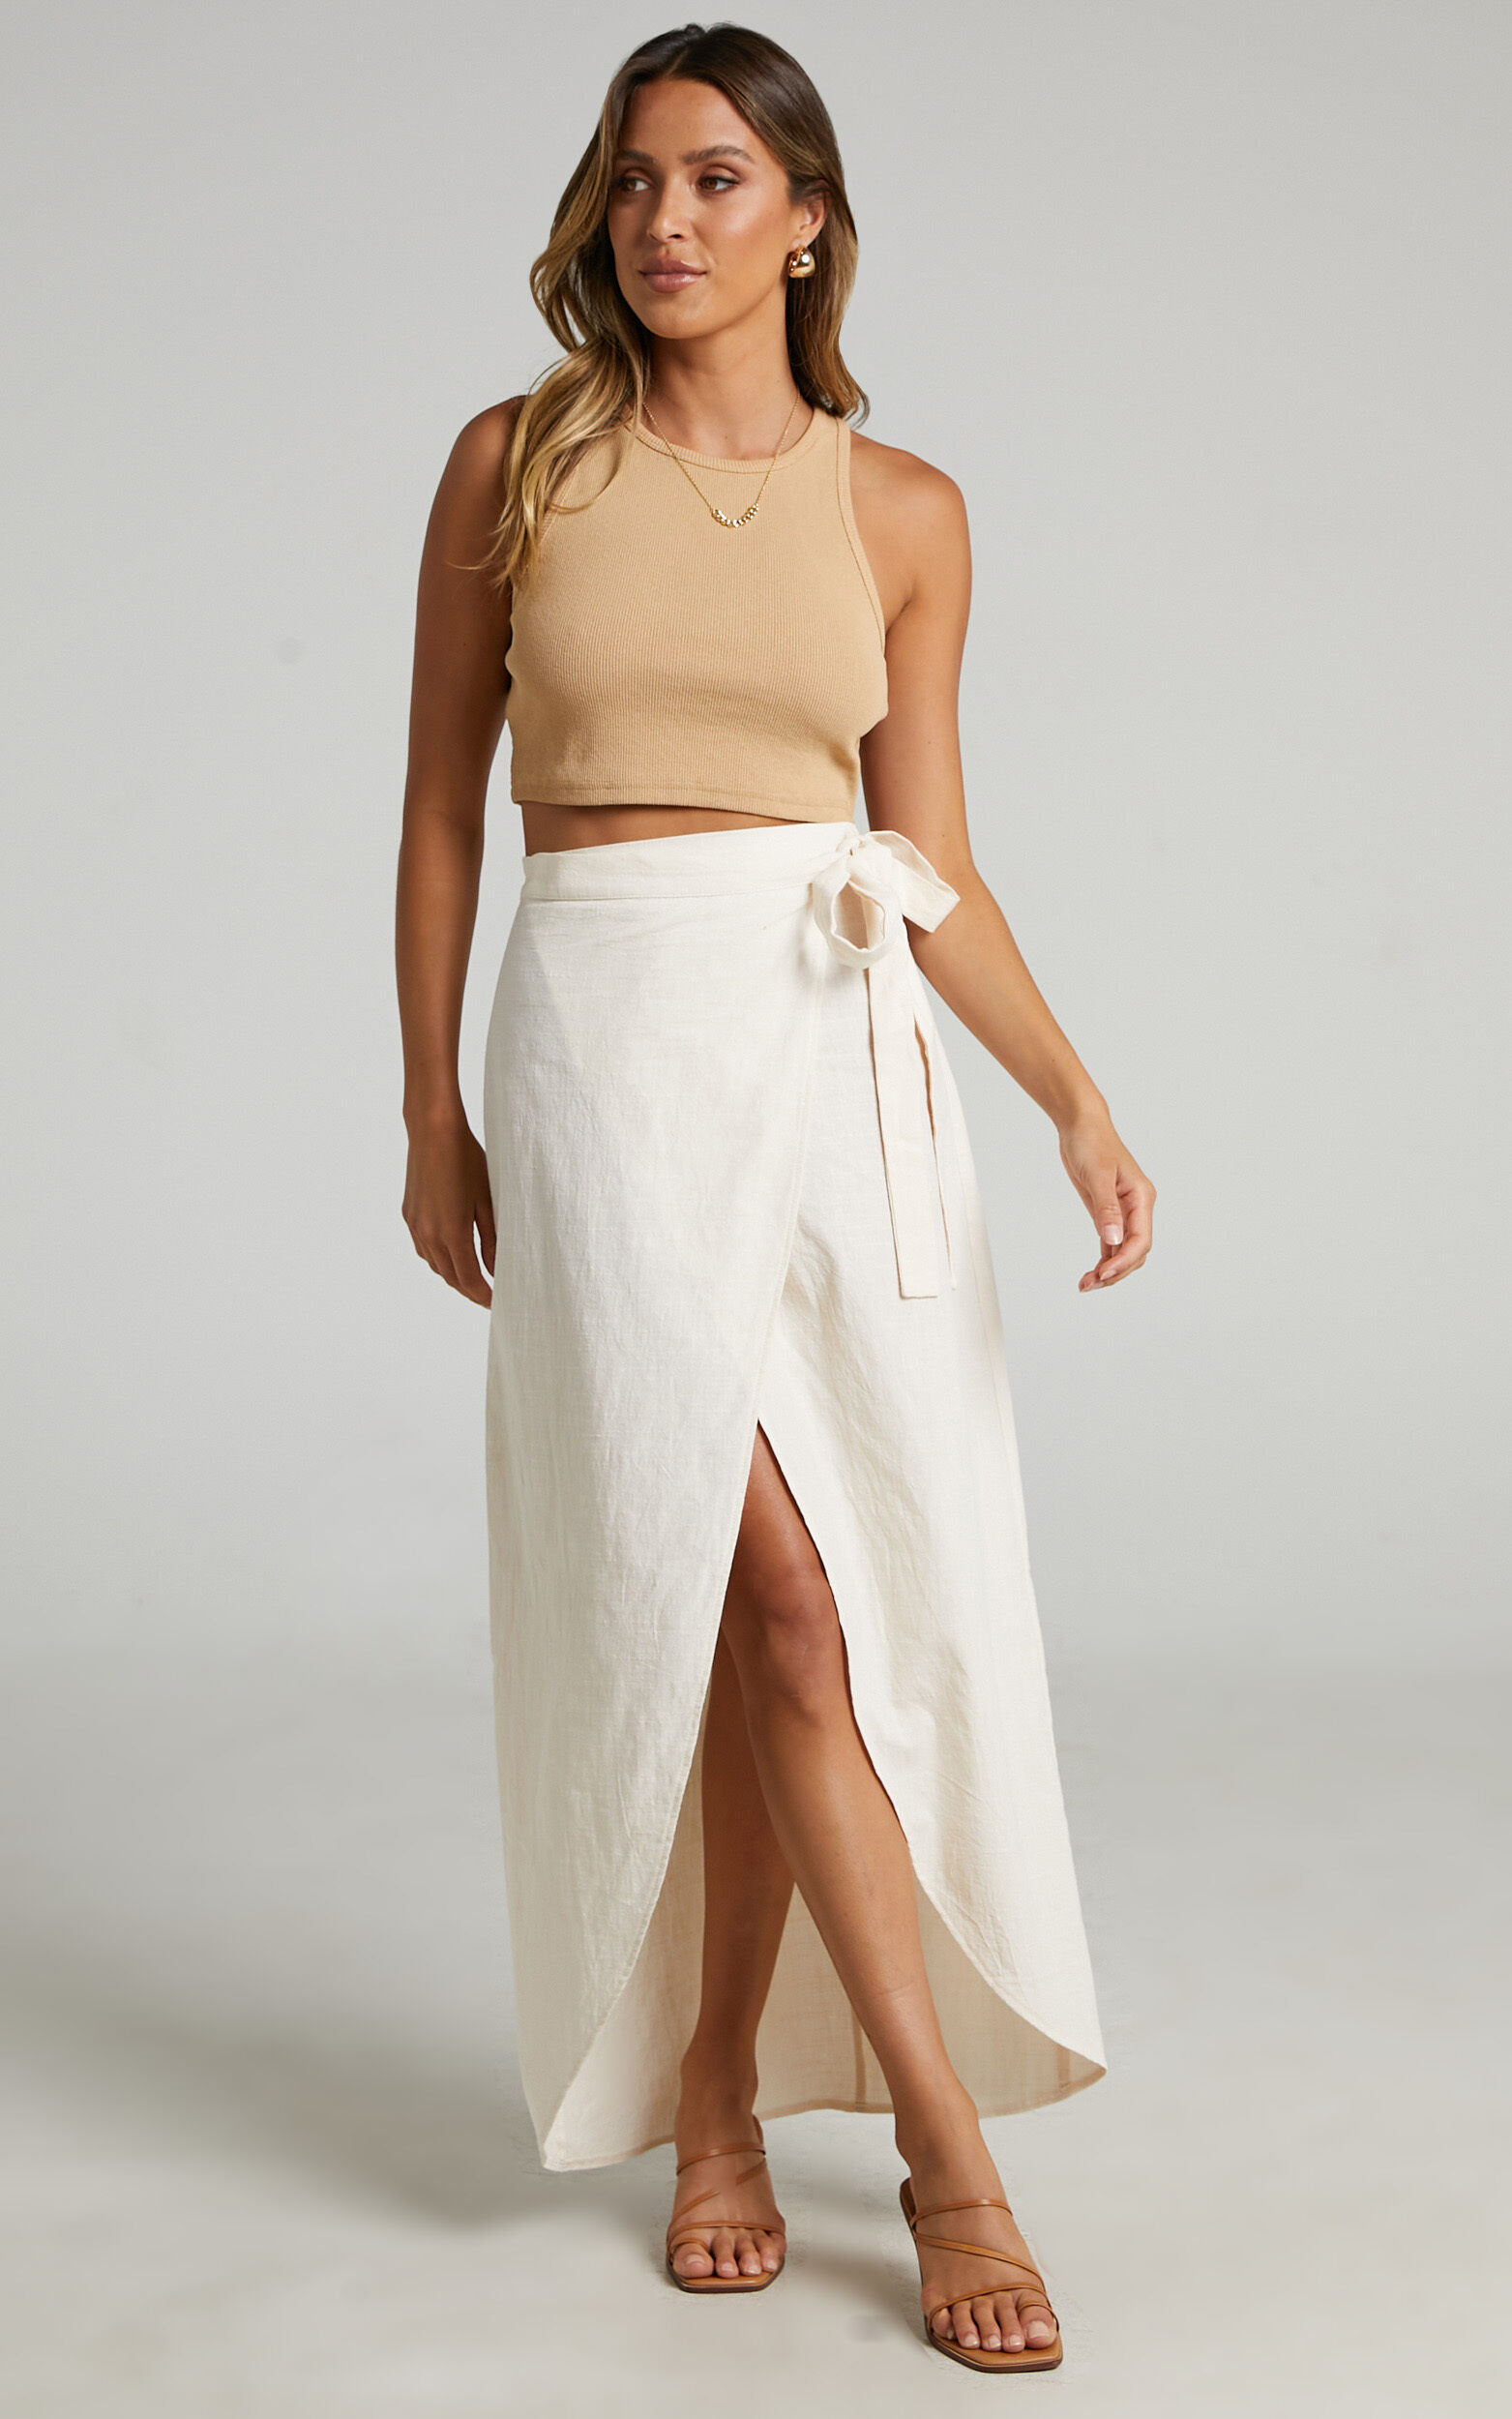 Aeditha Midi Skirt - Linen Look Wrap Skirt in Off White - 06, WHT1